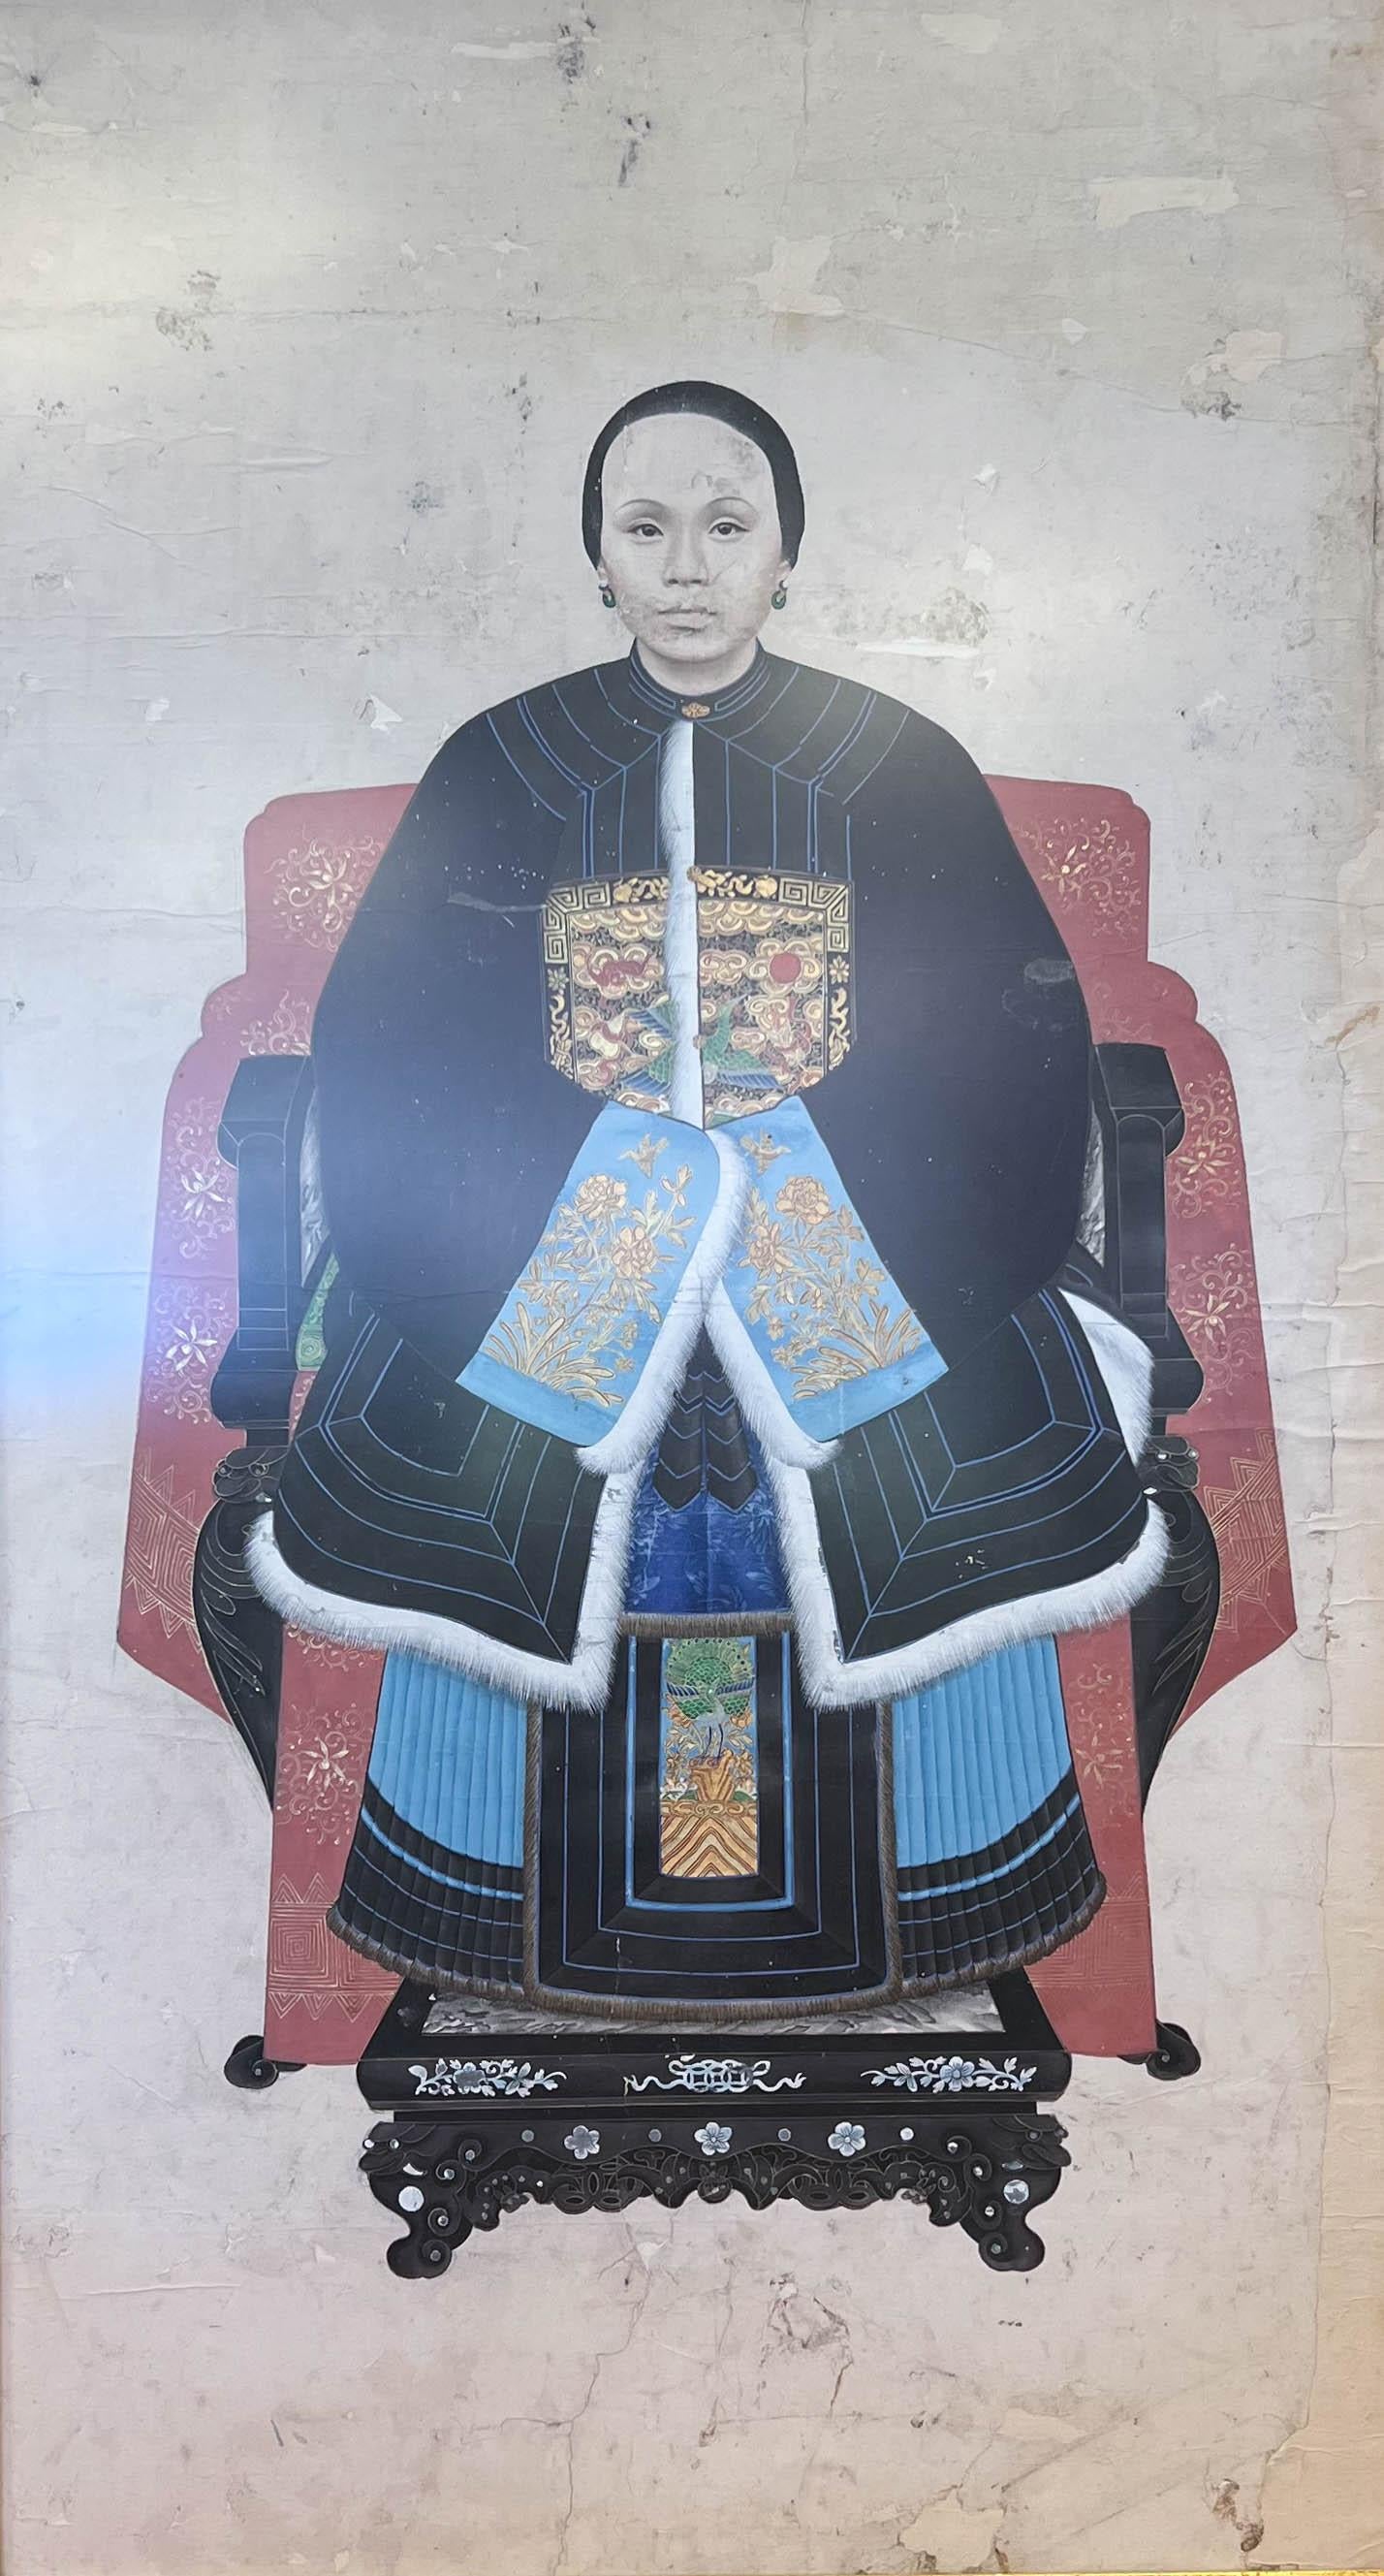 Portrait d'ancêtre d'une femme noble de la dynastie Qing. Son statut social se reflète dans le pardessus bordé de zibeline, à la mode du manteau vestimentaire strictement imposé de la dynastie Qing.  Le portrait est magnifiquement encadré et doté